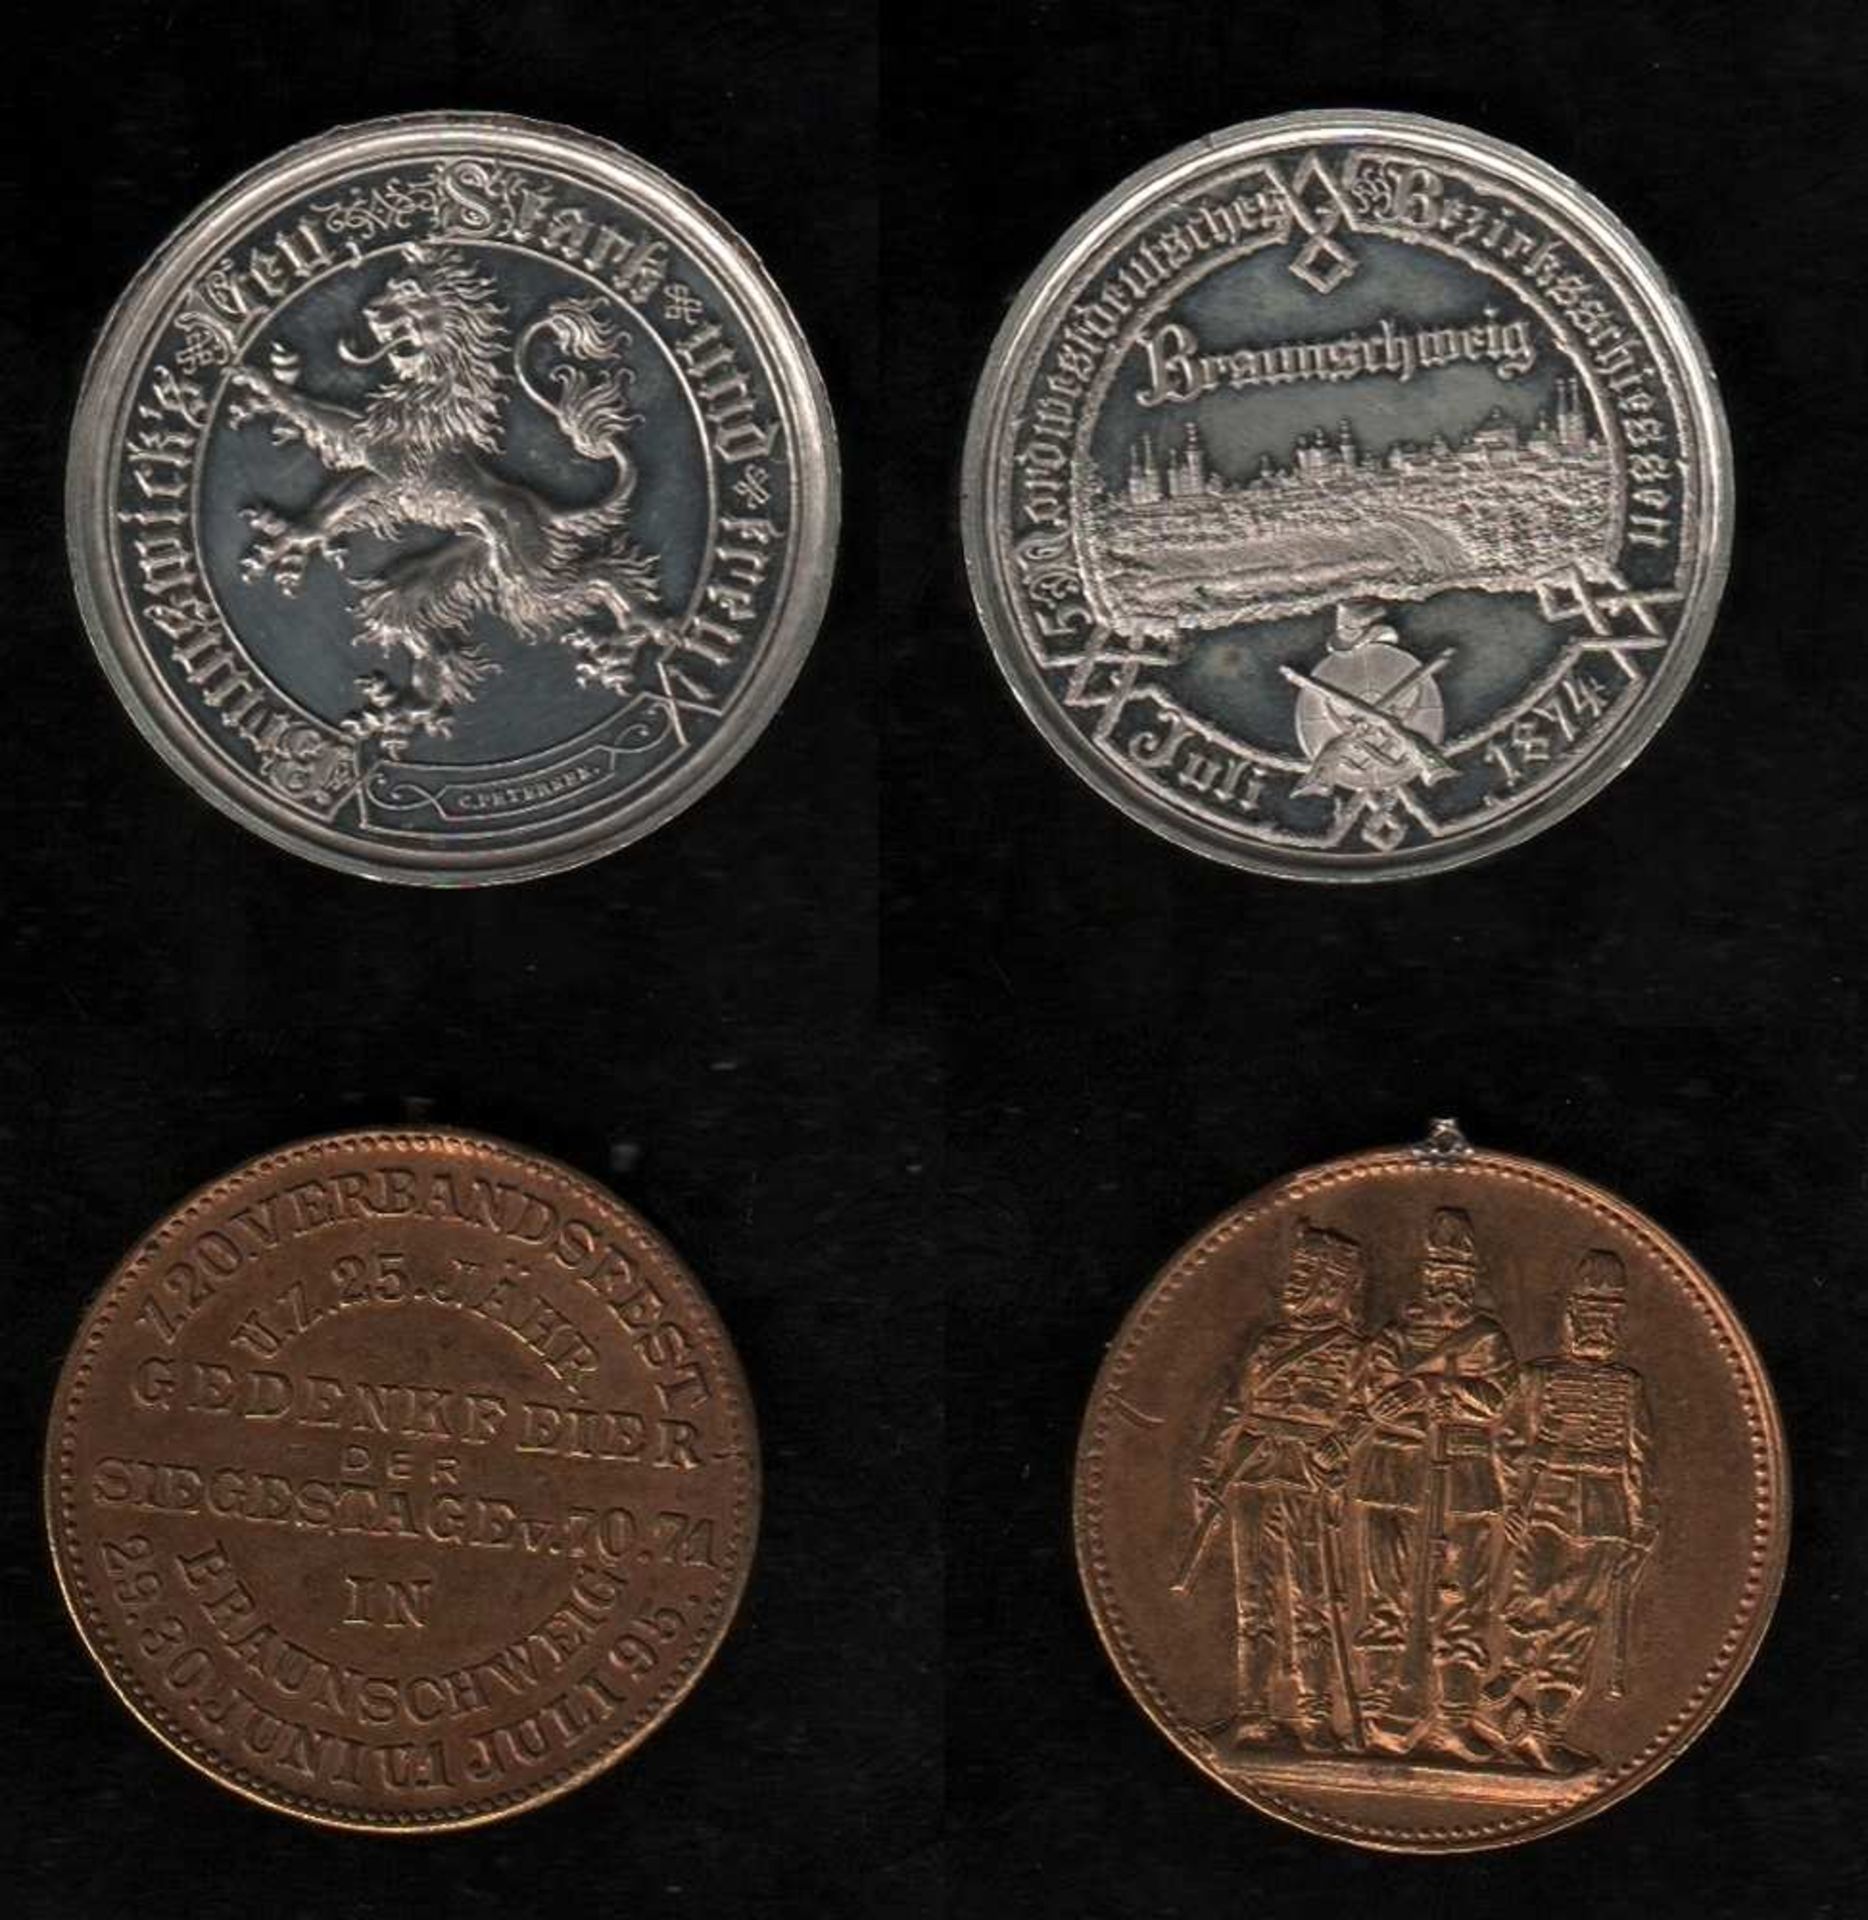 # Braunschweig. Medaille zum 5. Nordwestdeutschen Bezirksschießen in Braunschweig Juli 1874.